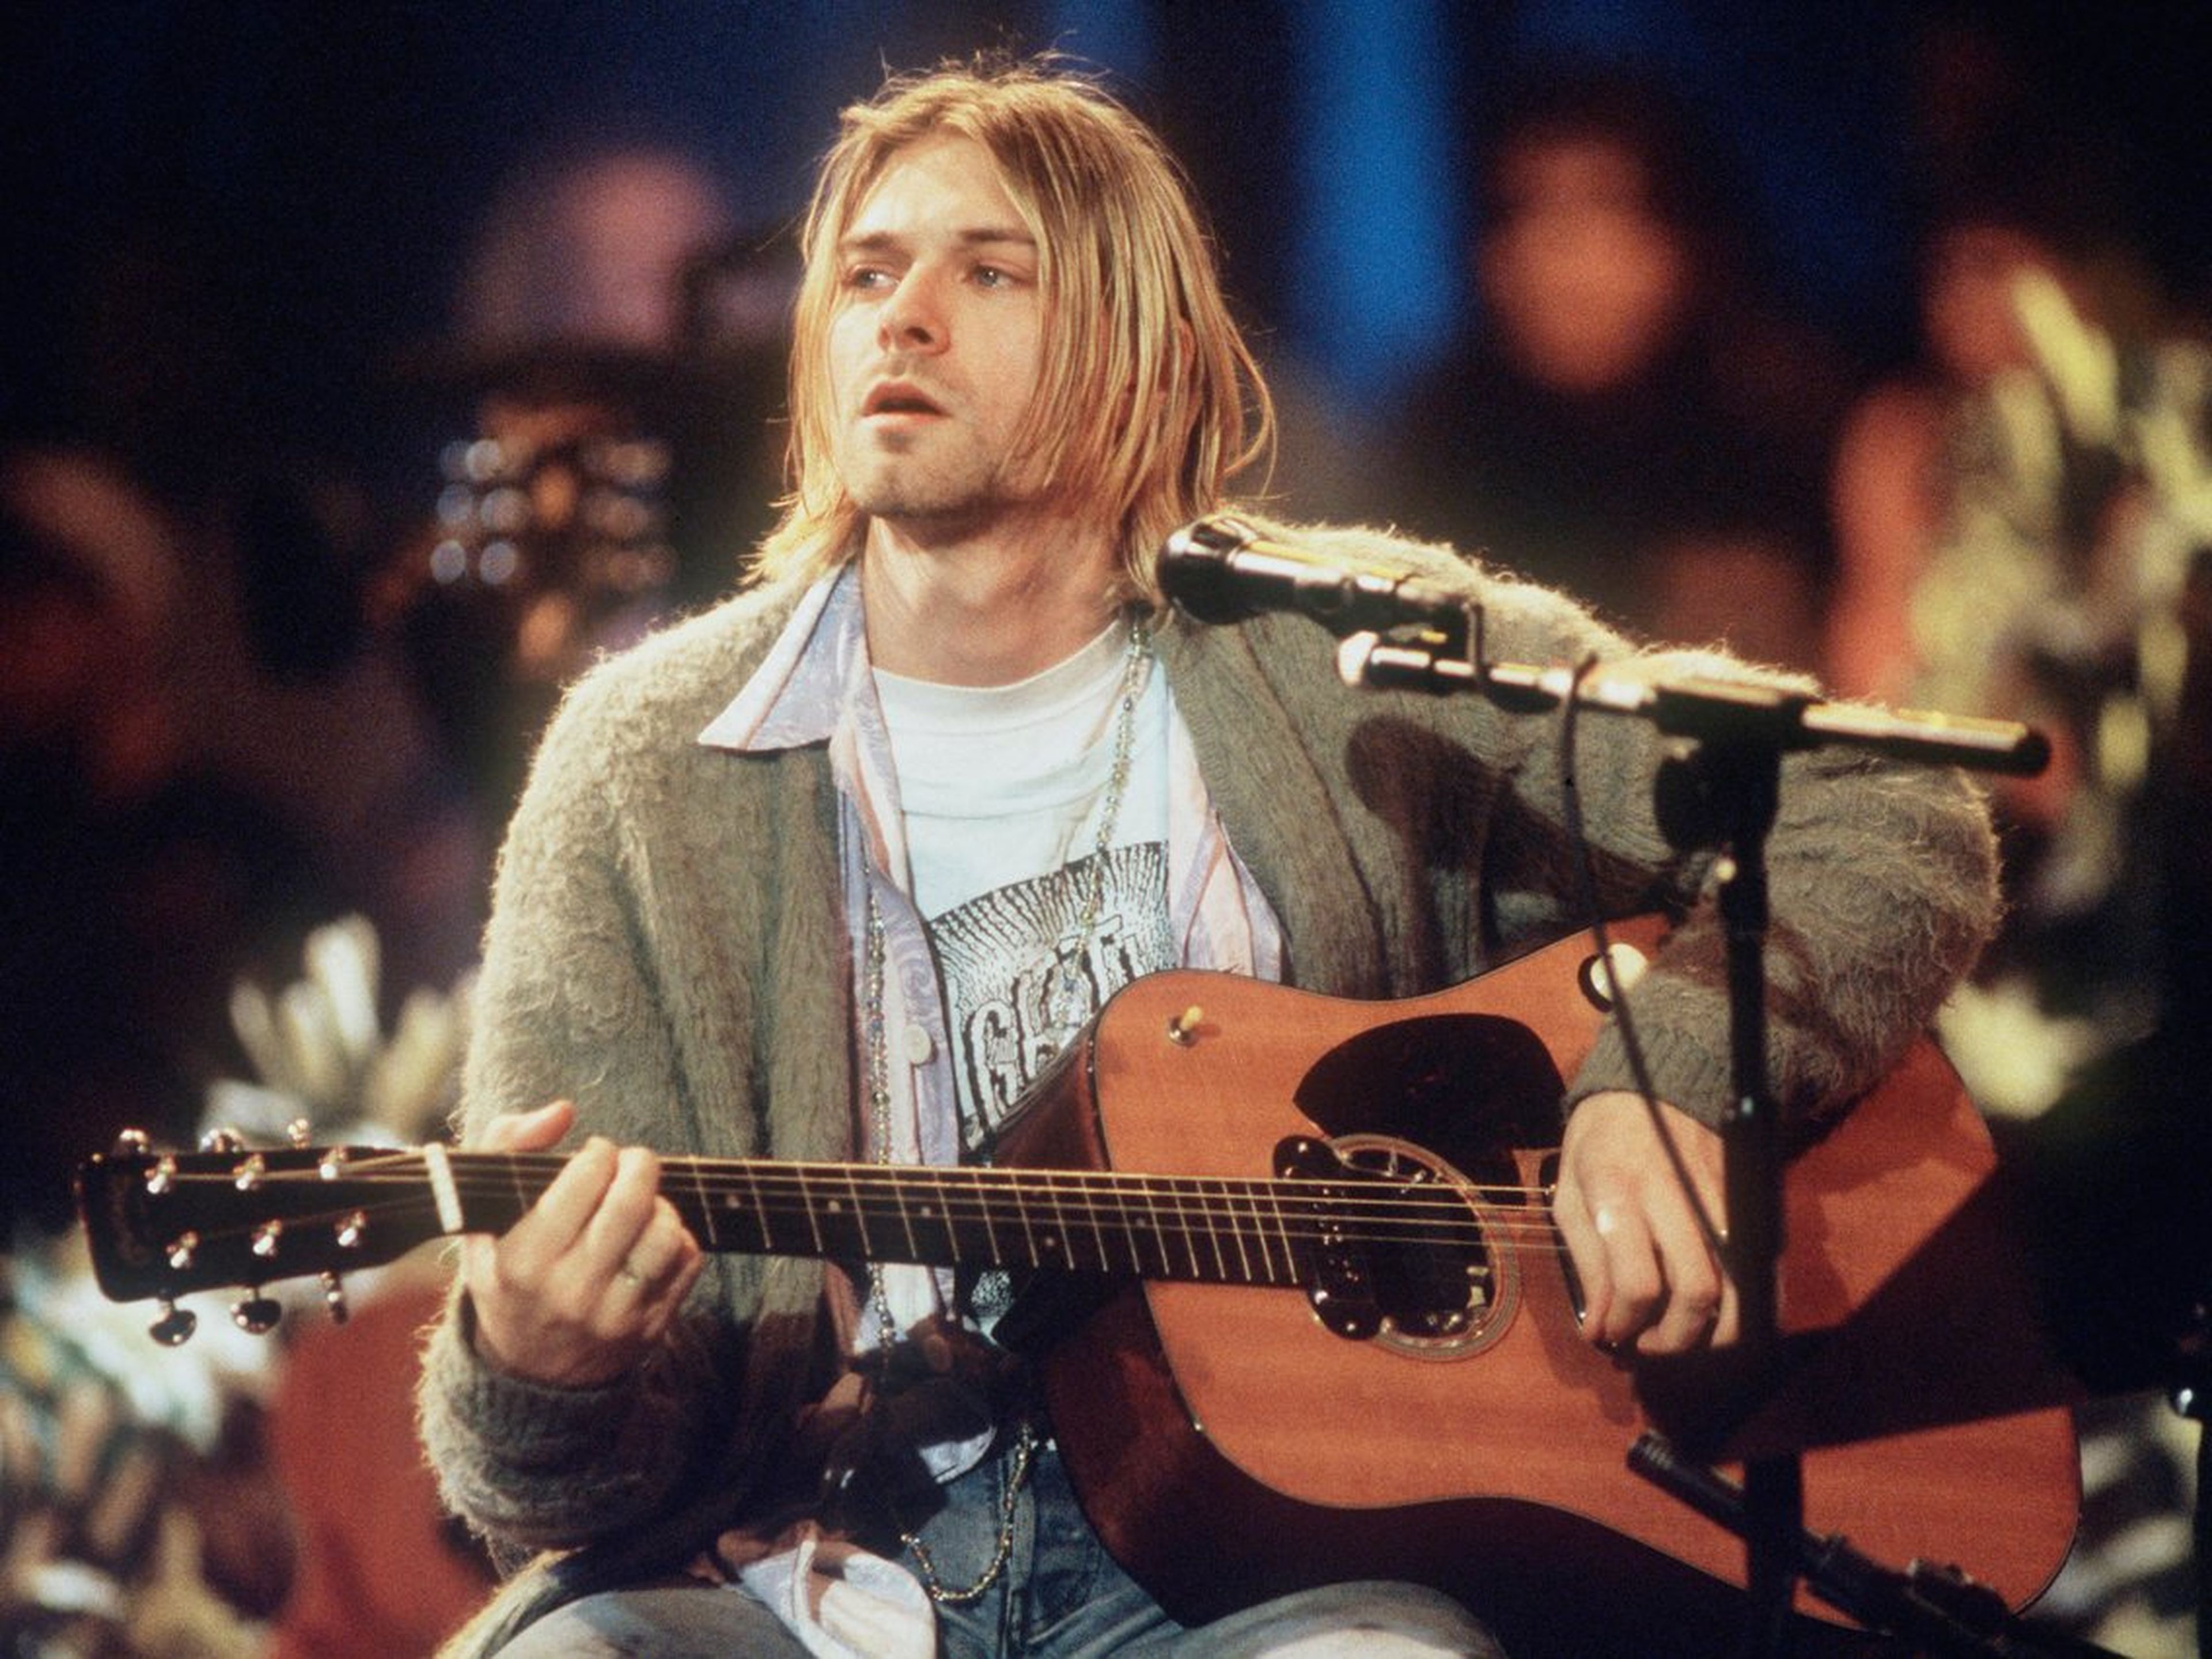 Kurt Cobain de Nirvana tocando en el concierto "MTV Unplugged" en 1993.